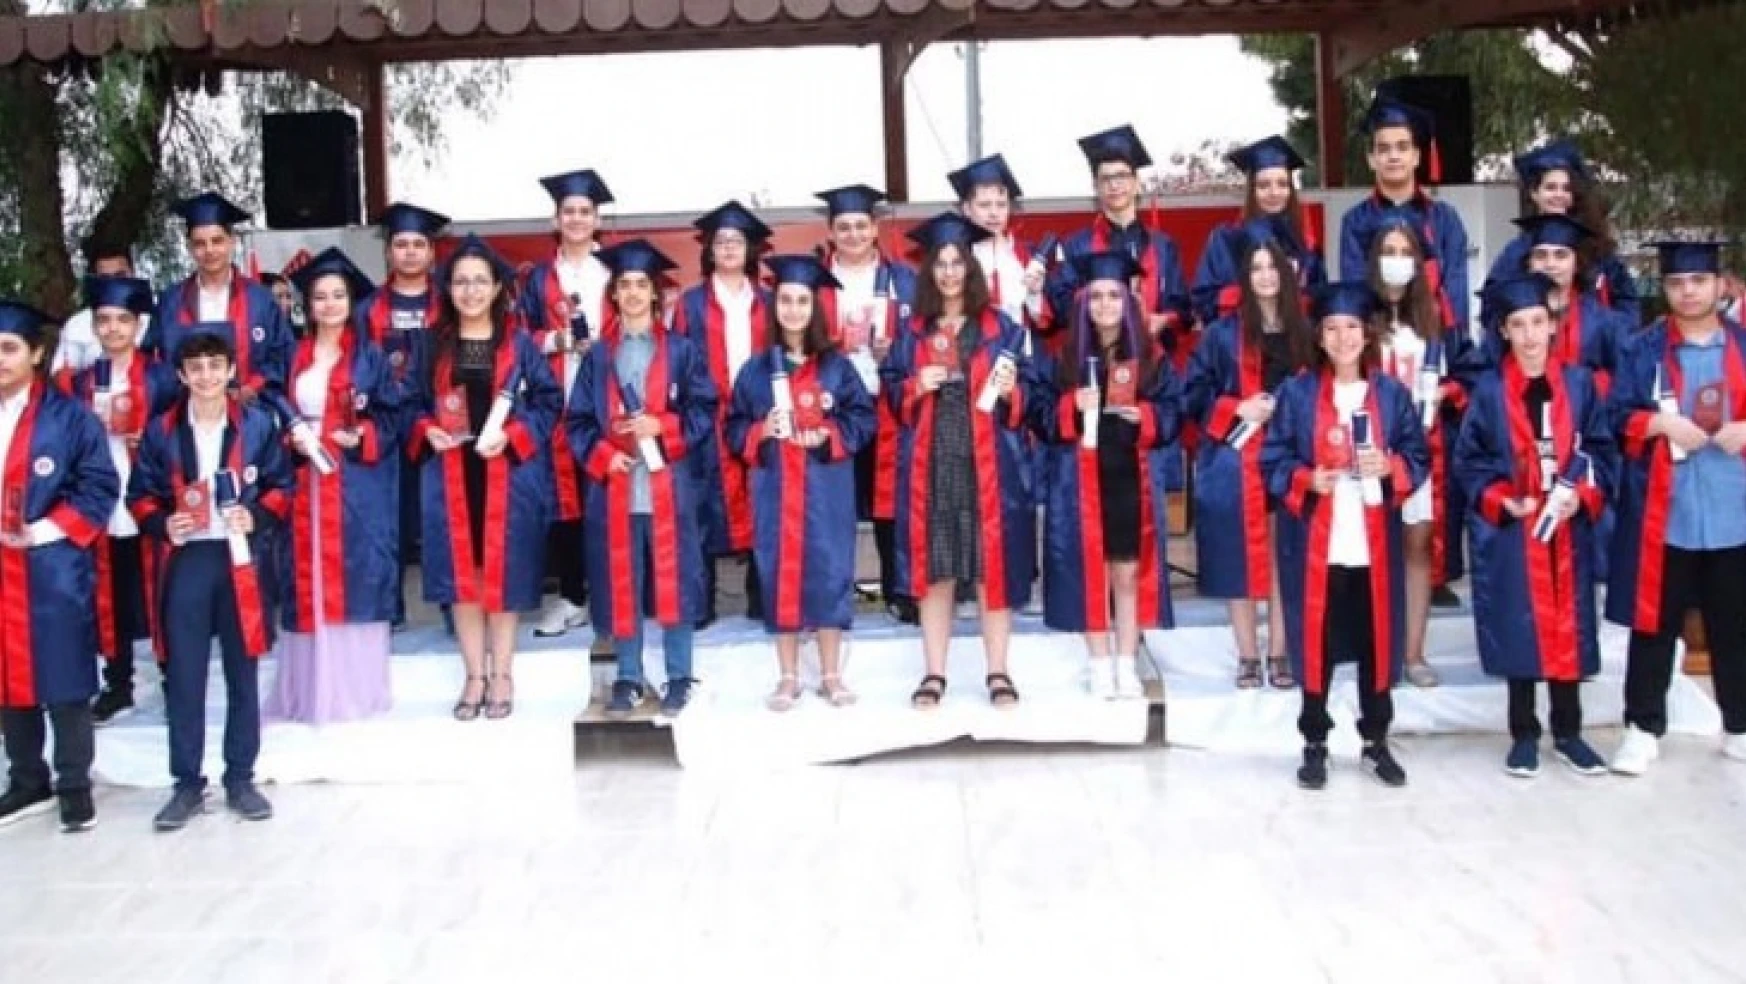 Bahçeşehir Koleji'nde mezuniyet coşkusu